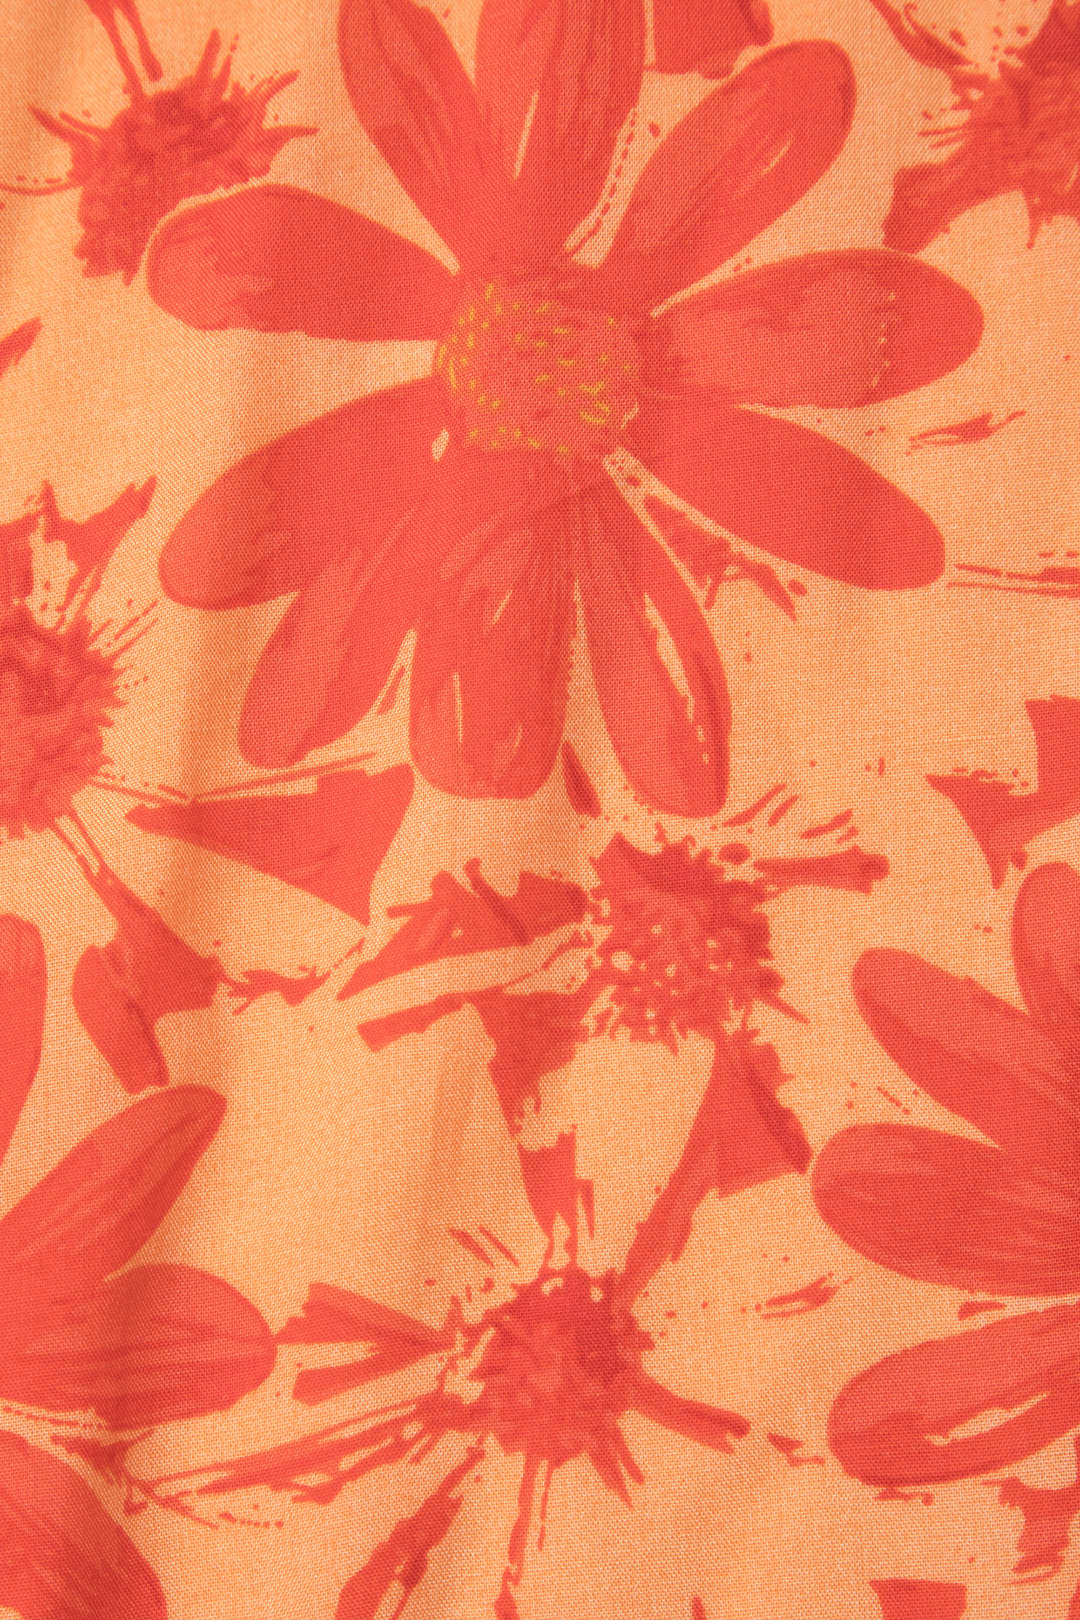 Floral Print Asymmetric High-Waisted Skirt